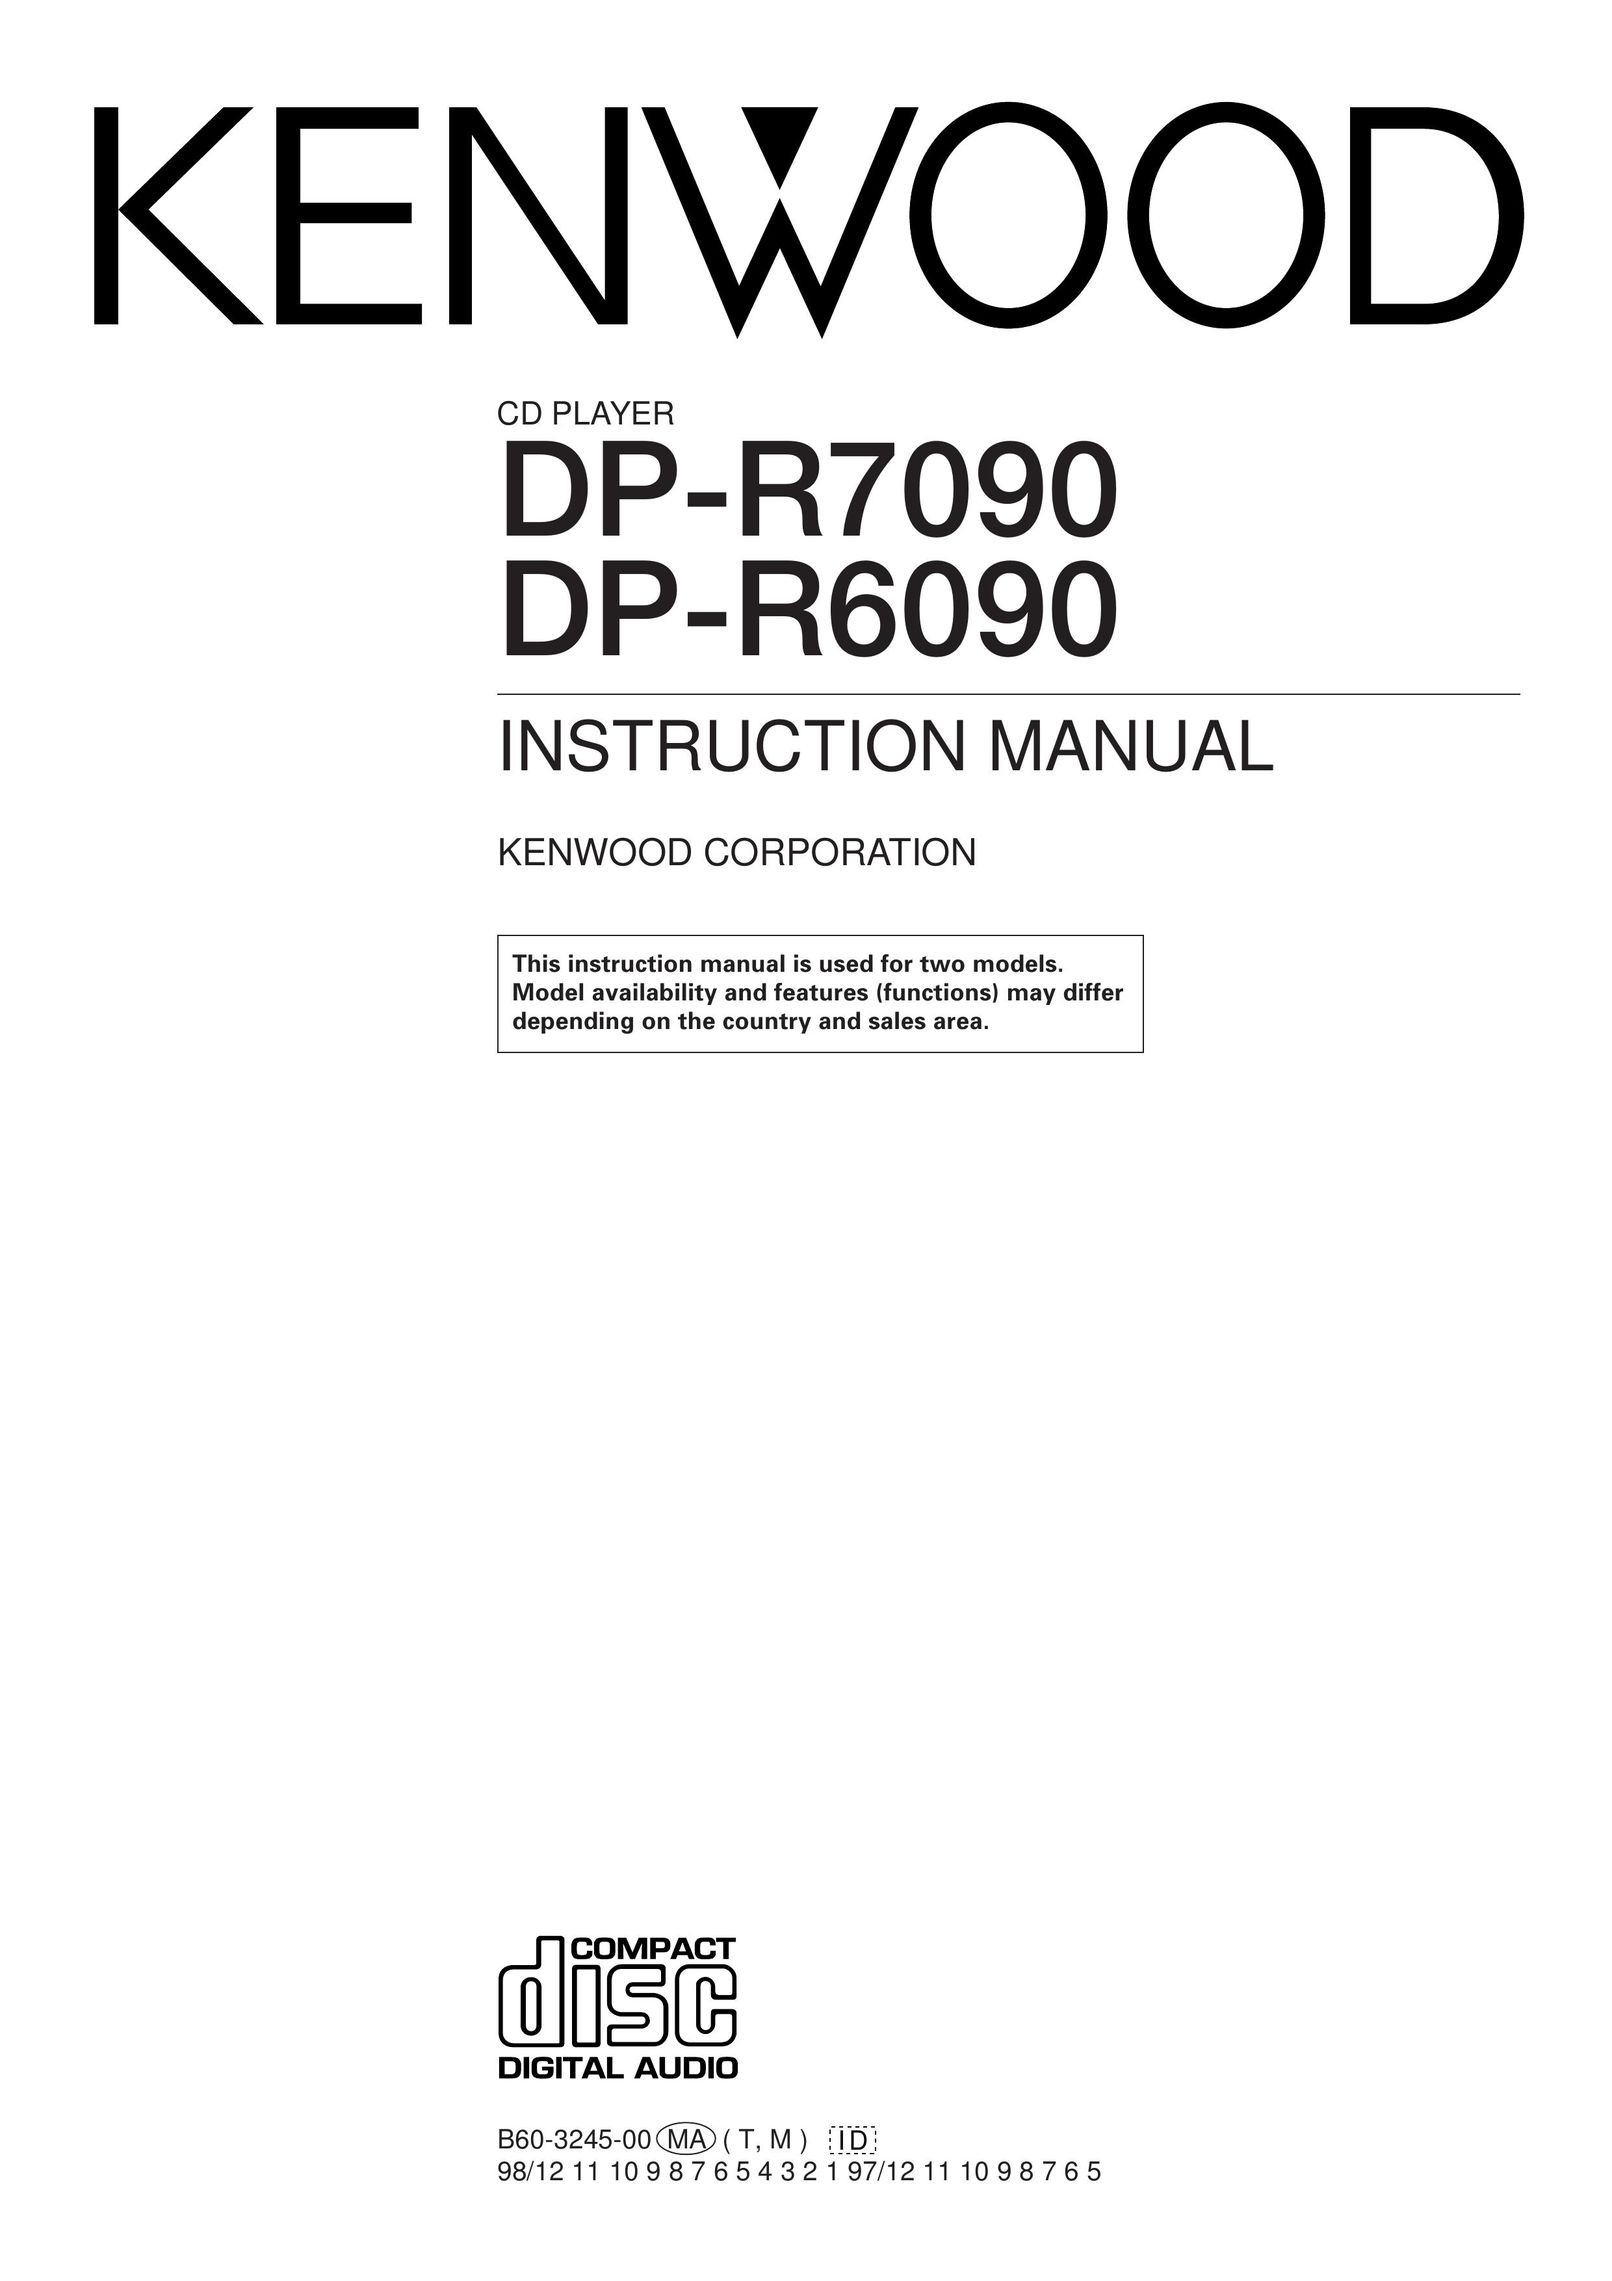 Kenwood DP-R6090 CD Player User Manual